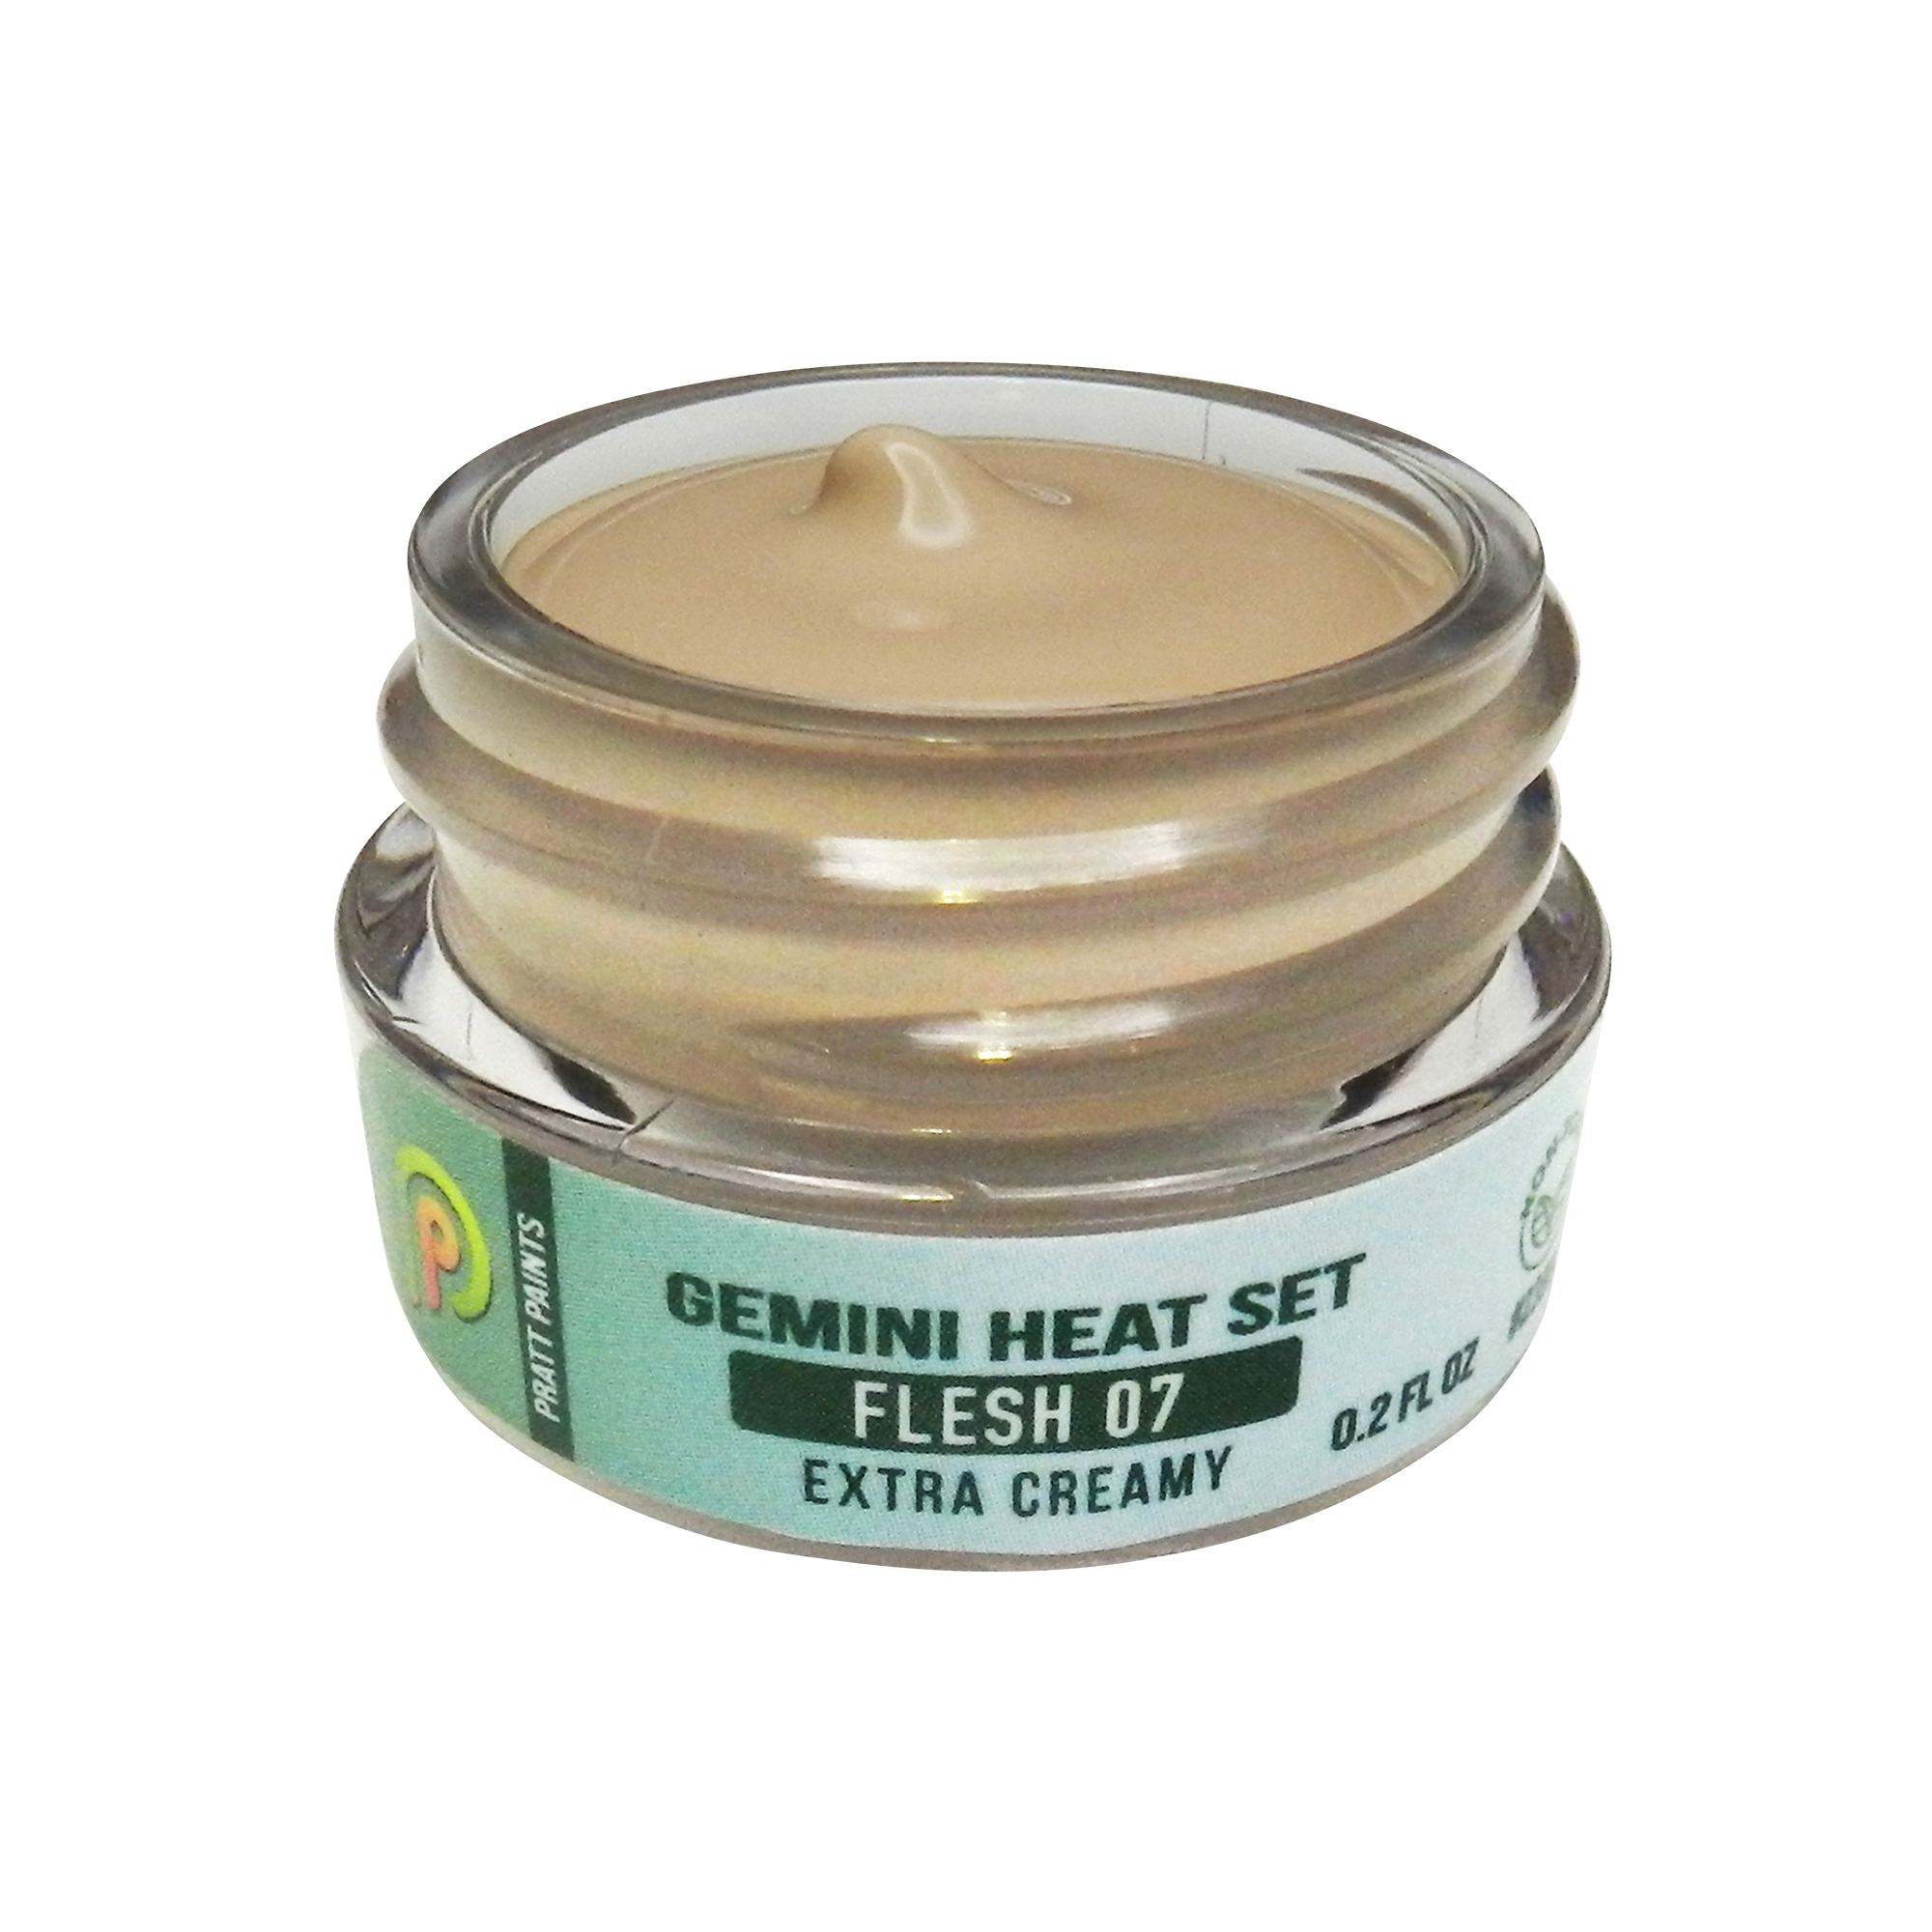 NEW! Flesh 07 - Gemini Heat Set Paint - 7 grams #2395